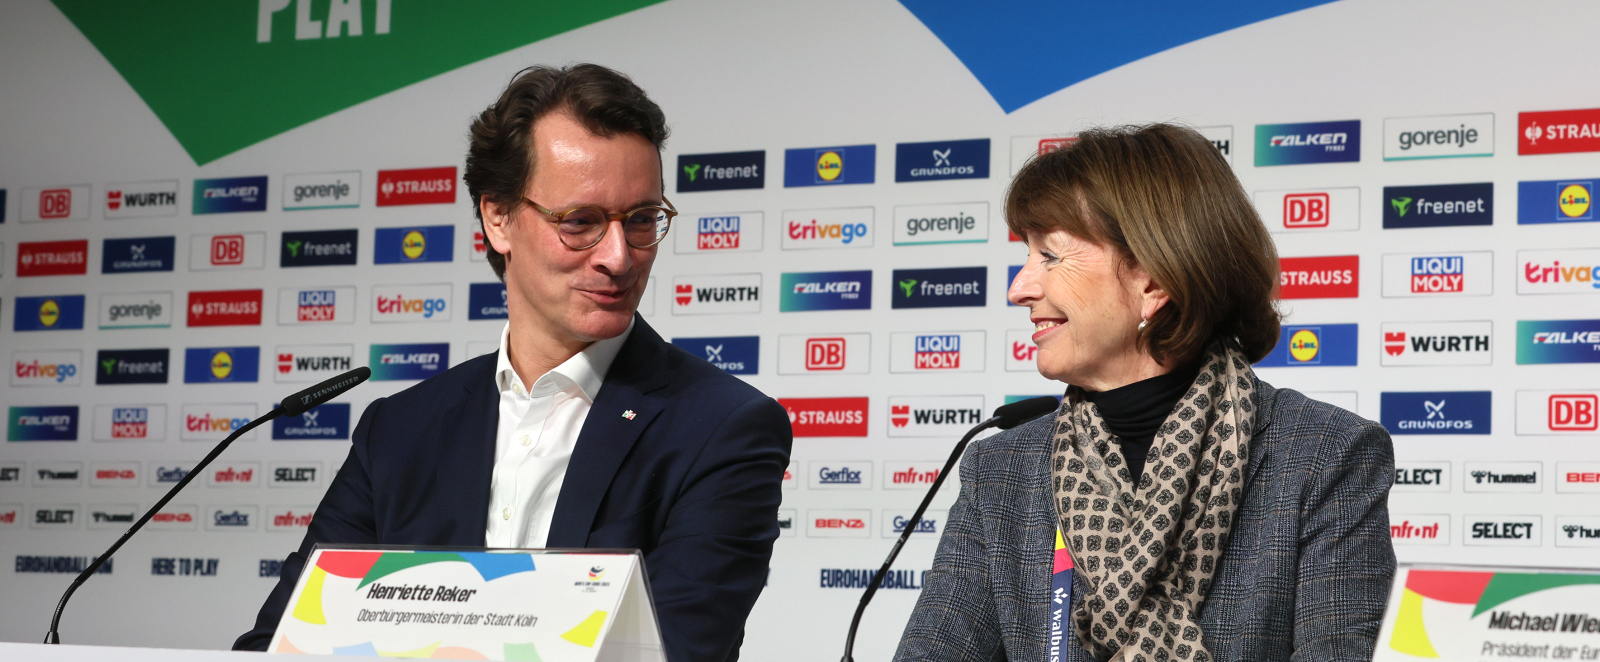 Hendrik Wüst und Henriette Reker bei einer Pressekonferenz in Köln